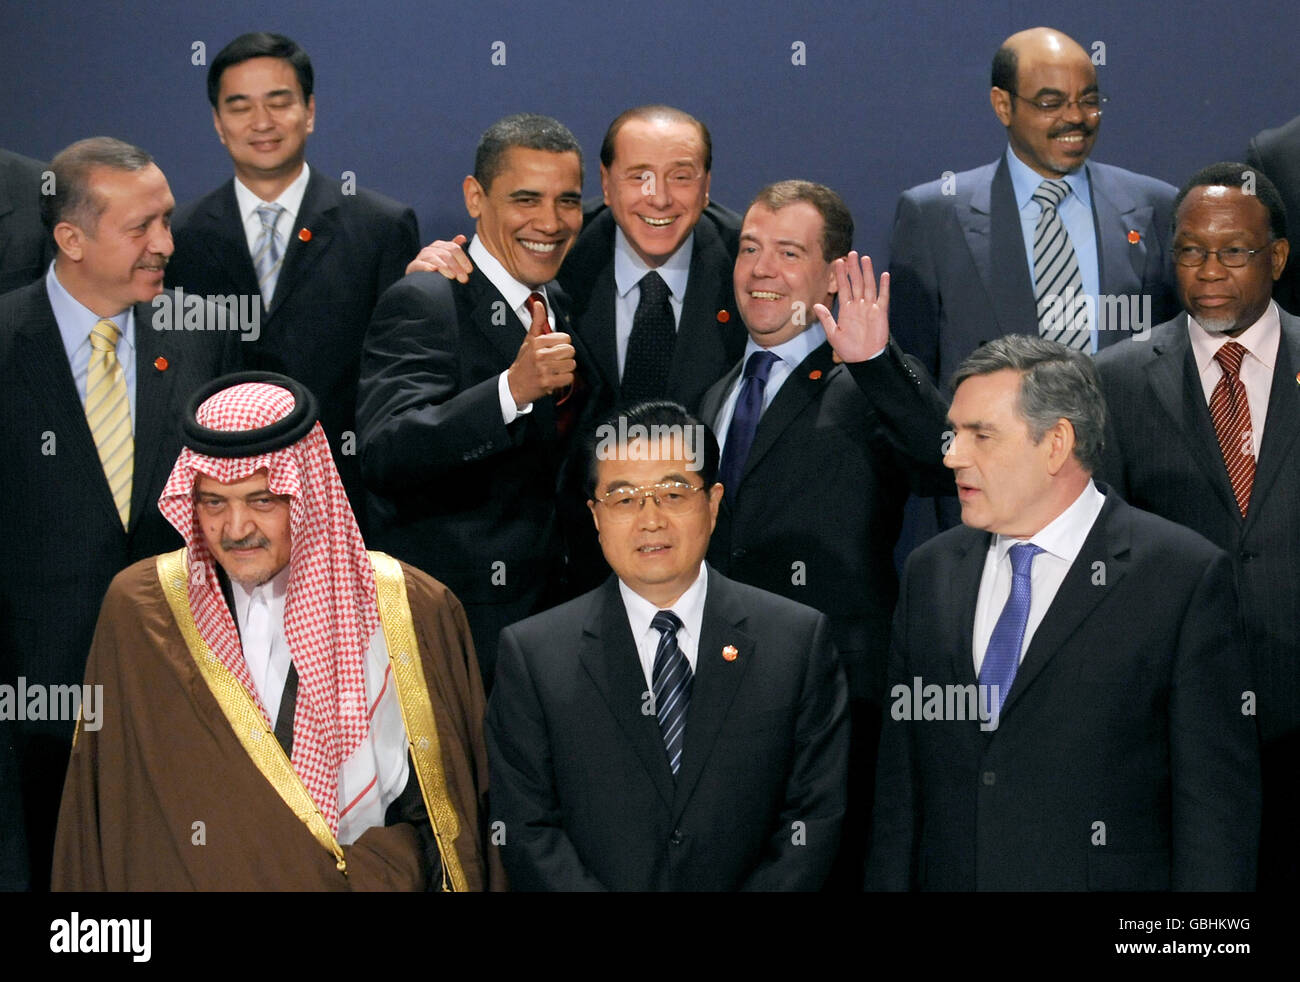 Zu Beginn des G20-Gipfels in London haben sich die Staats- und Regierungschefs der Welt ein Bild gemacht, darunter US-Präsident Barack Obama, der italienische Premierminister Silvio Berlusconi und der russische Präsident Dmitri Medwedew (im Hintergrund). Stockfoto